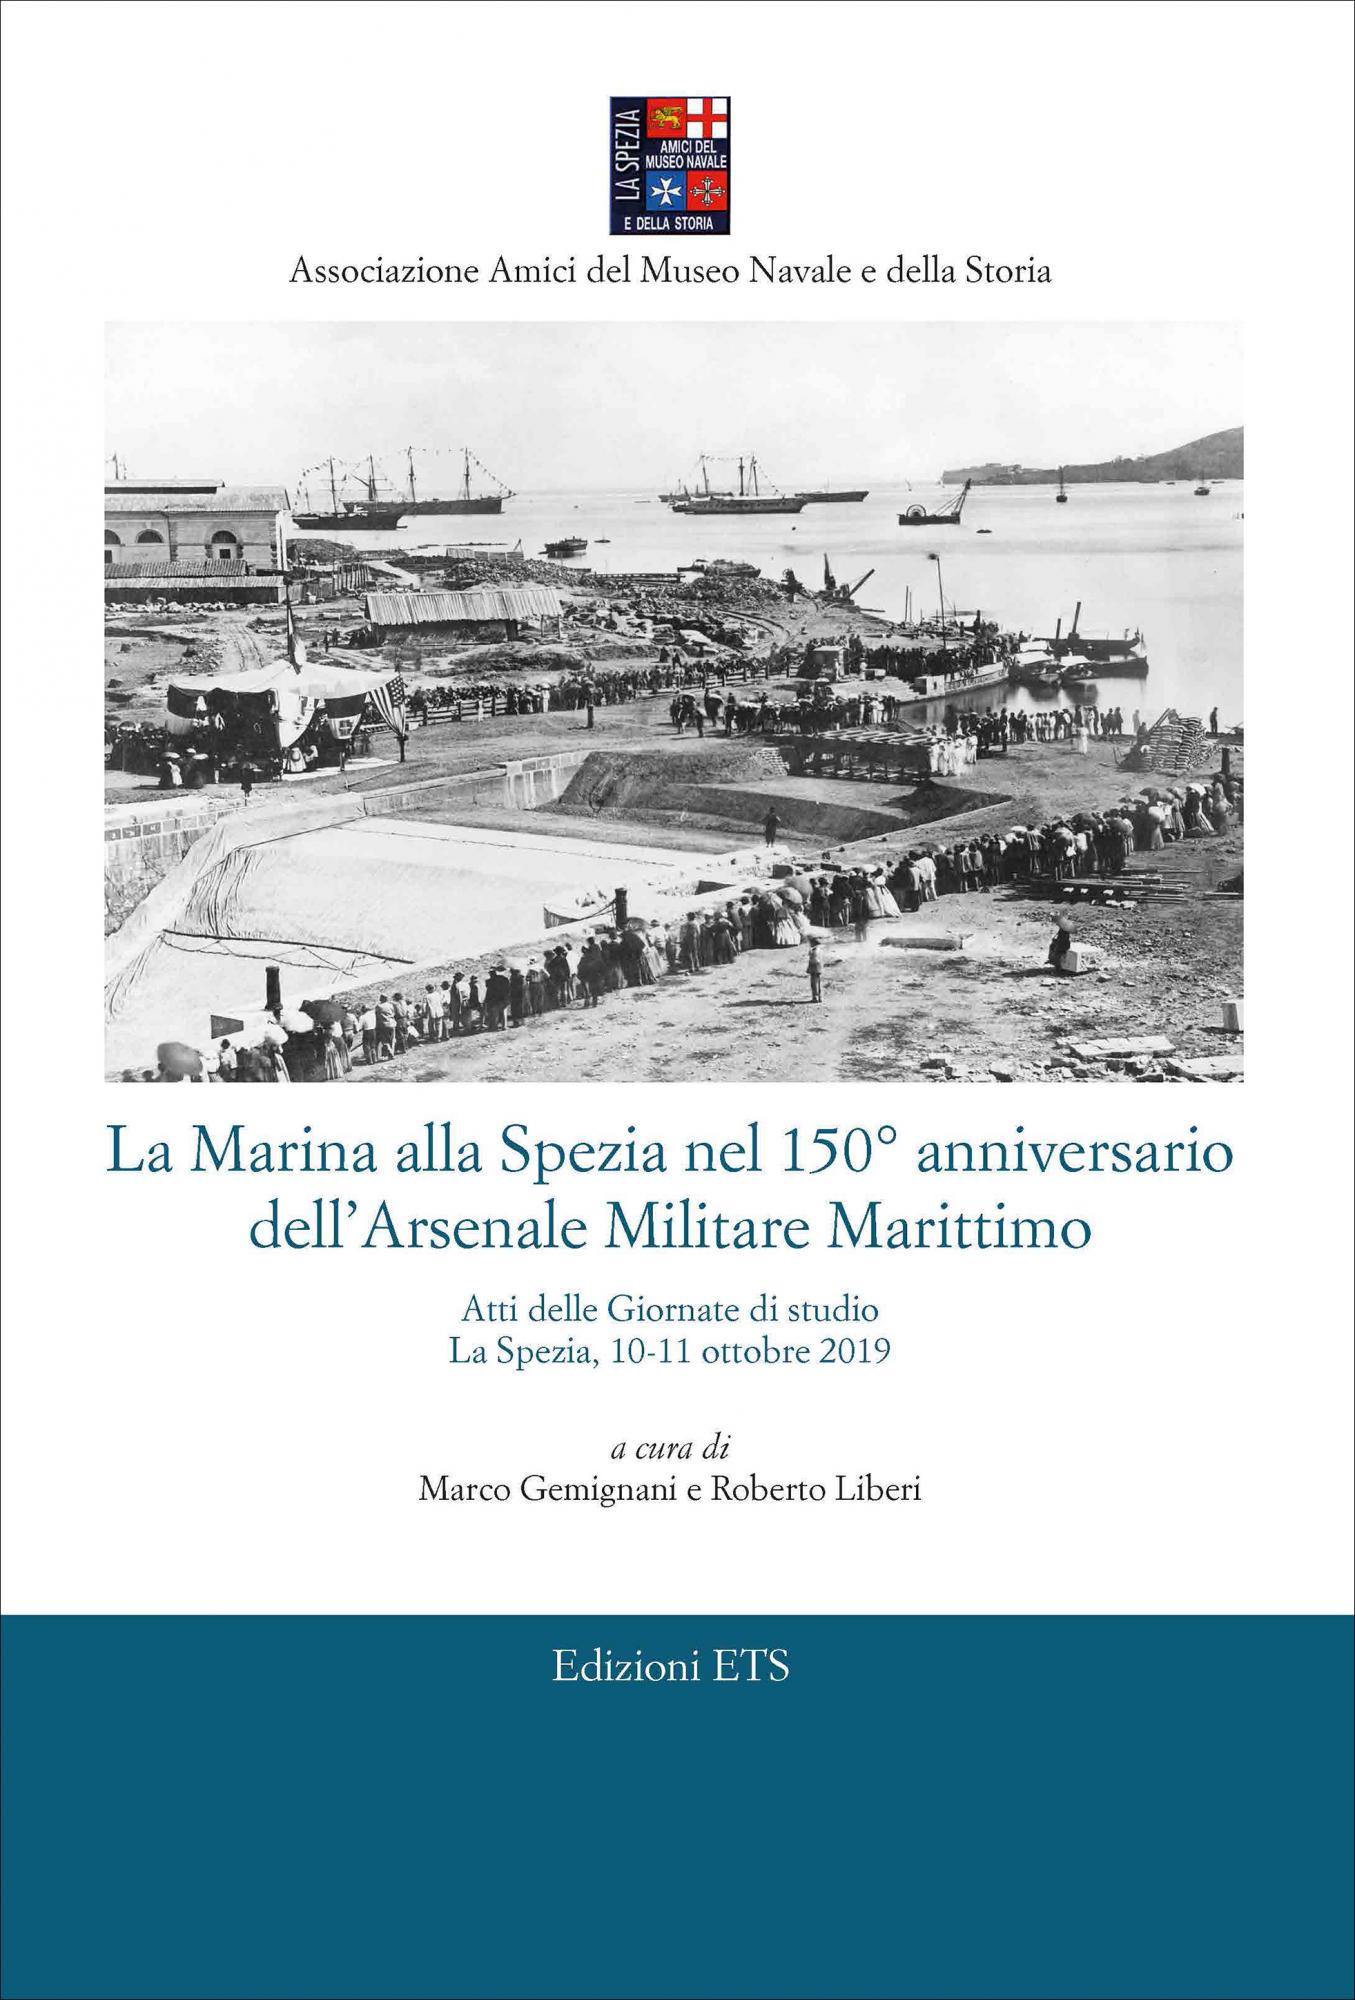 La Marina alla Spezia nel 150° anniversario dell’Arsenale Militare Marittimo.Atti delle Giornate di studio La Spezia, 10-11 ottobre 2019